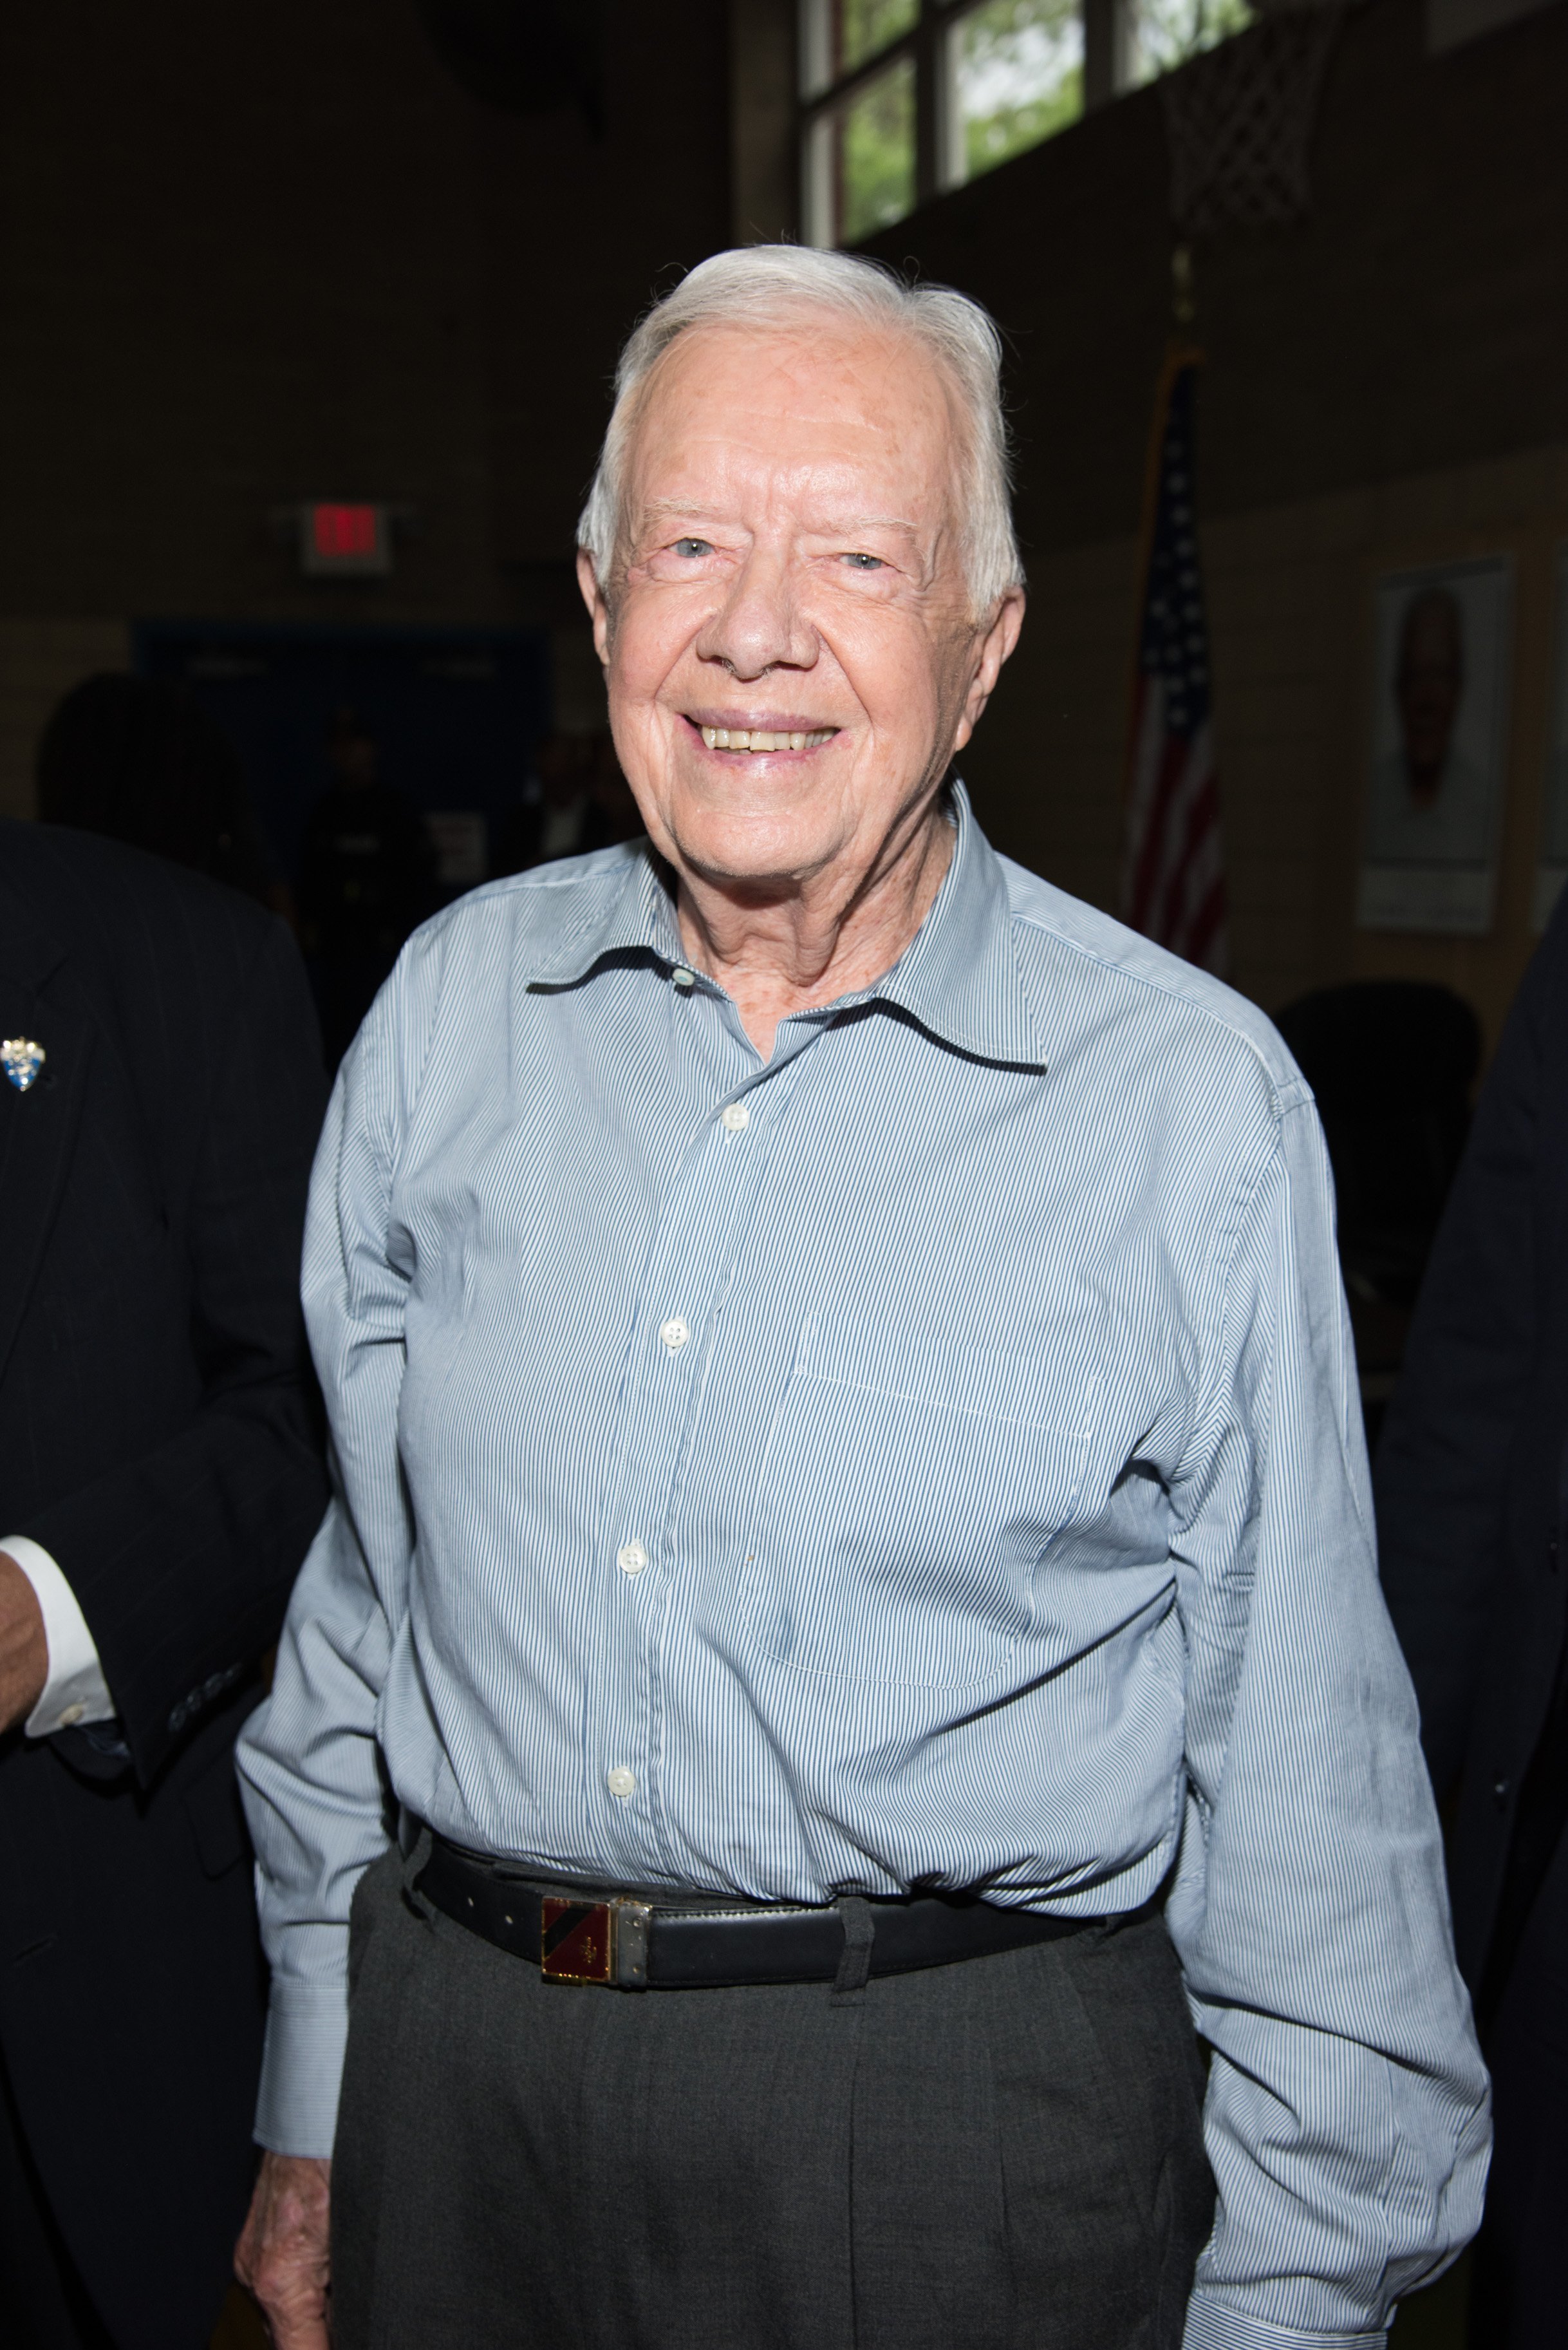 Jimmy Carter signe des exemplaires de "Une vie pleine : réflexion à 90 ans" à la Bookends Bookends Bookstore le 8 juillet 2015, à Ridgewood, New Jersey. | Source : Getty Images.